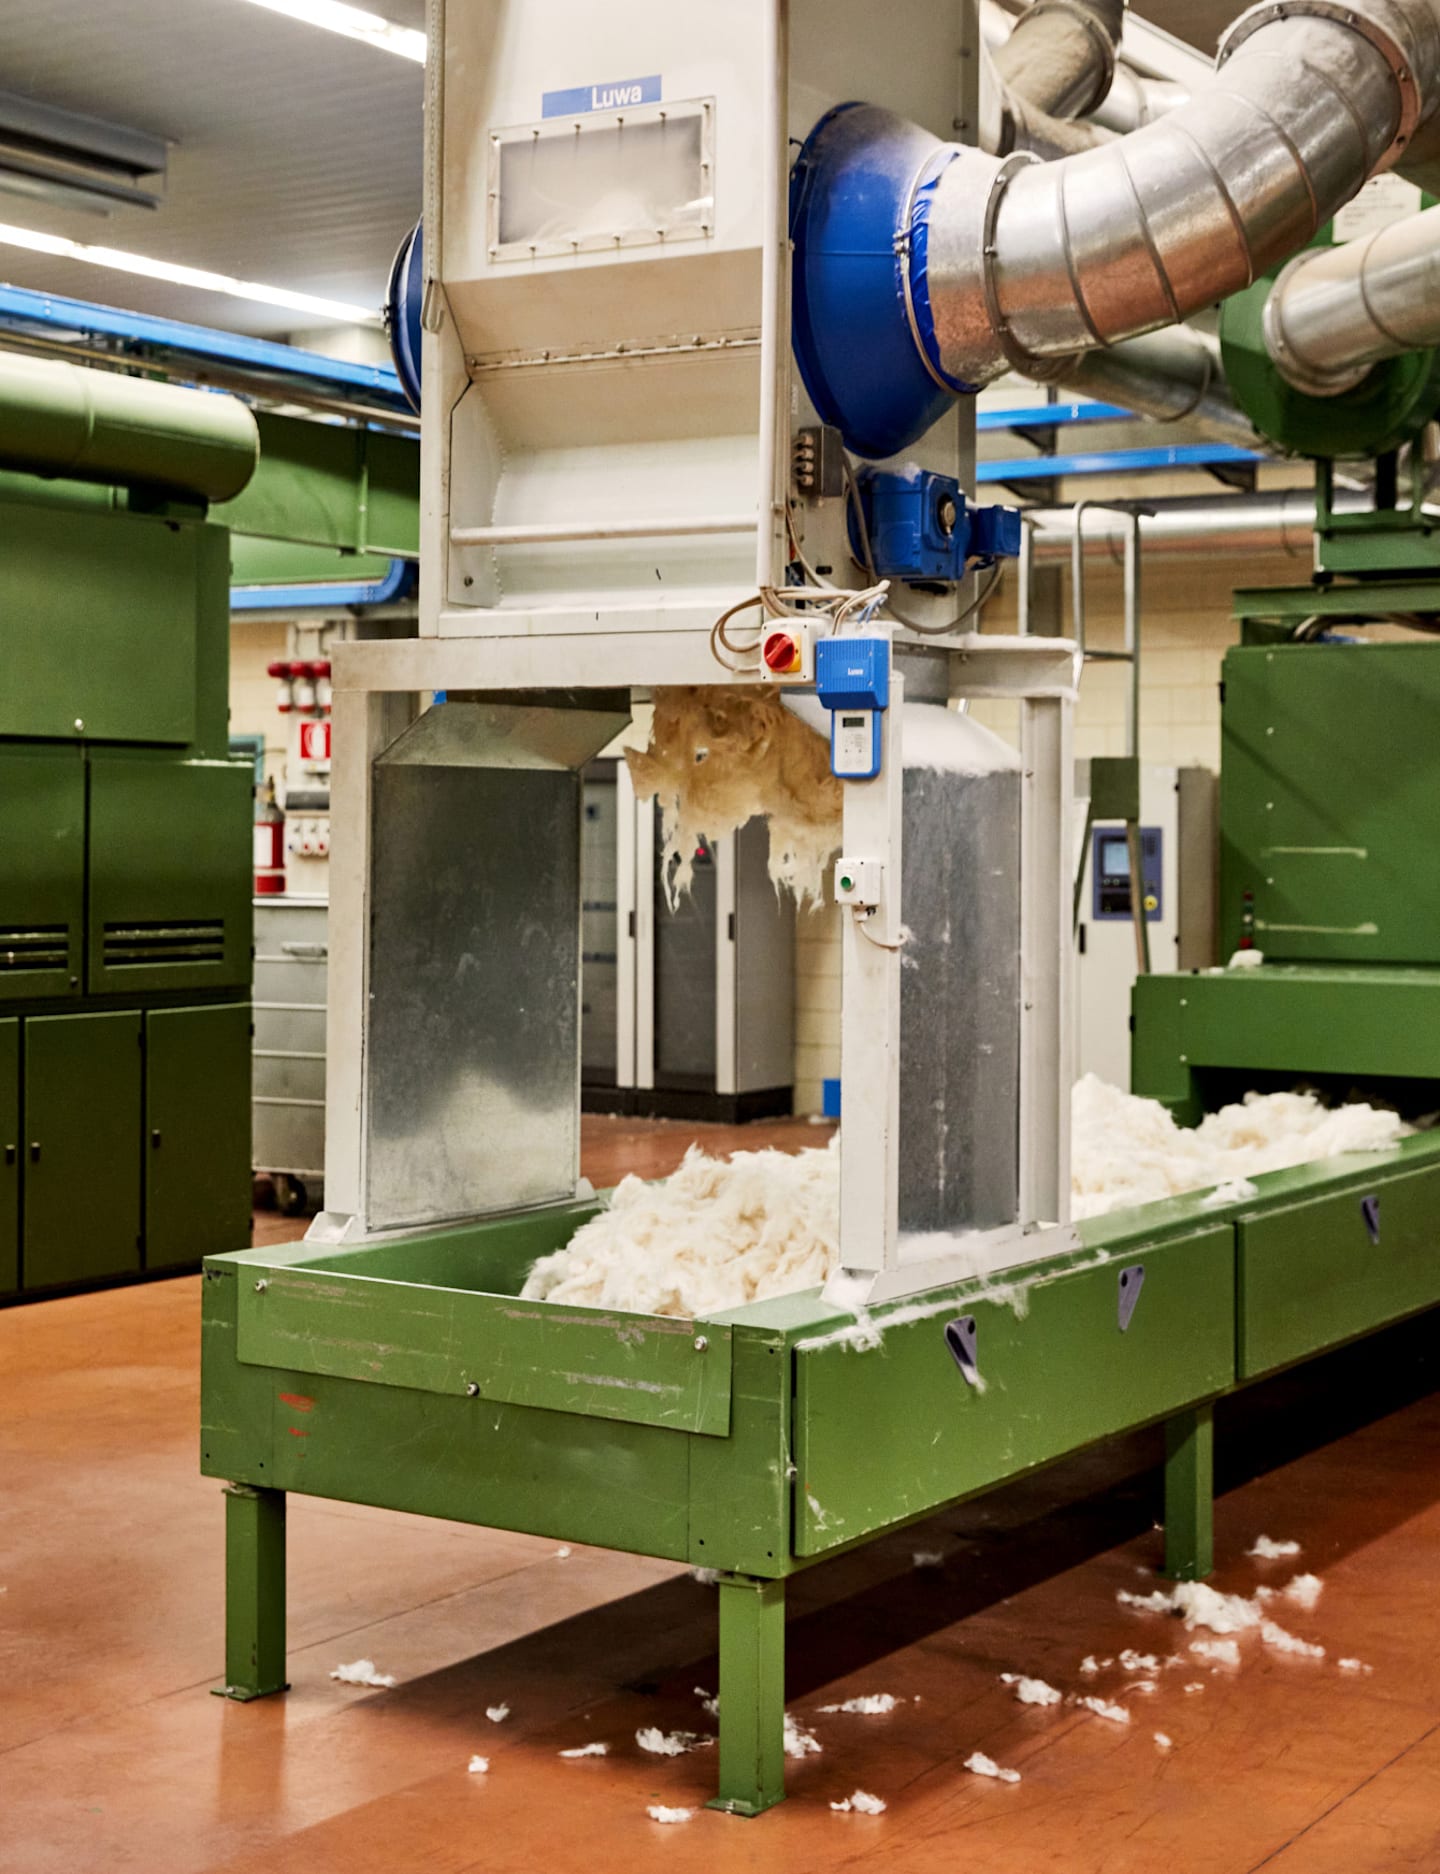 Industrial vacuum for capturing cotton scraps